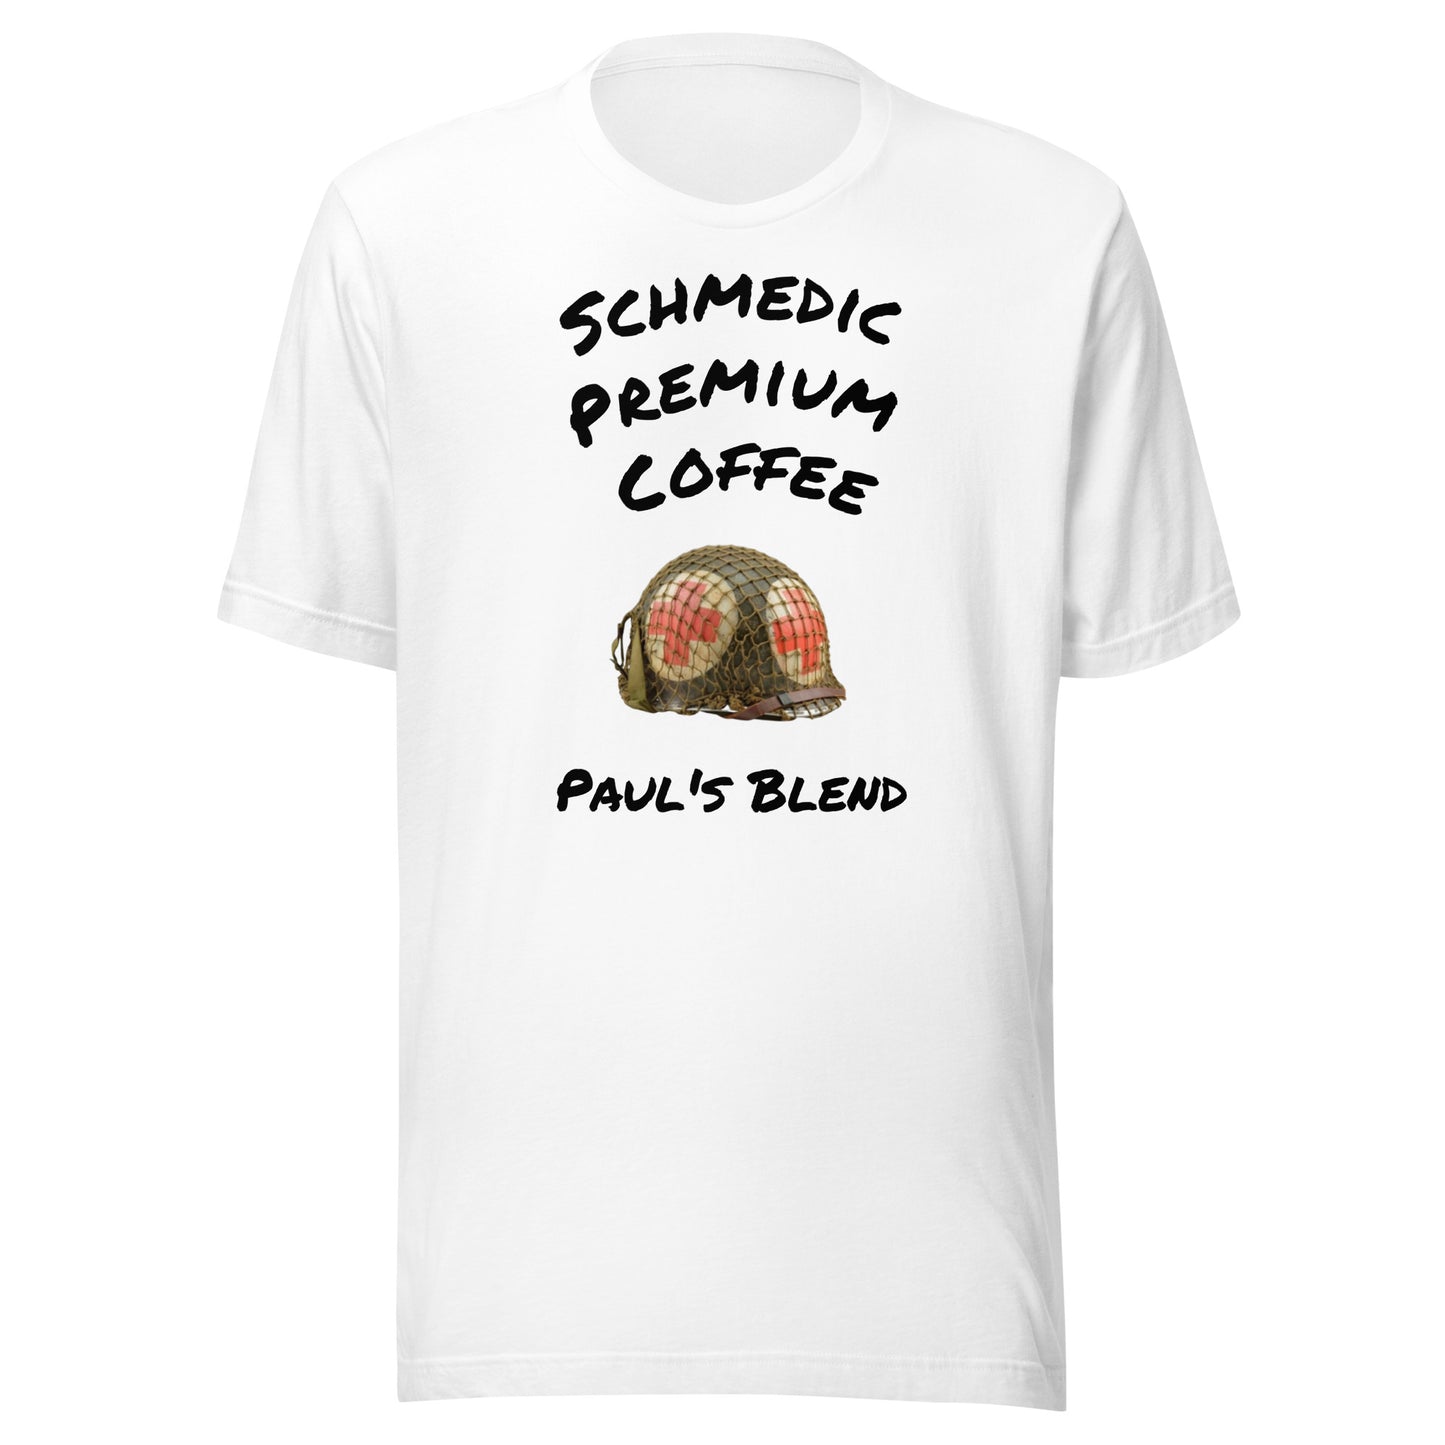 Paul's Blend (Black Lettering) Unisex t-shirt